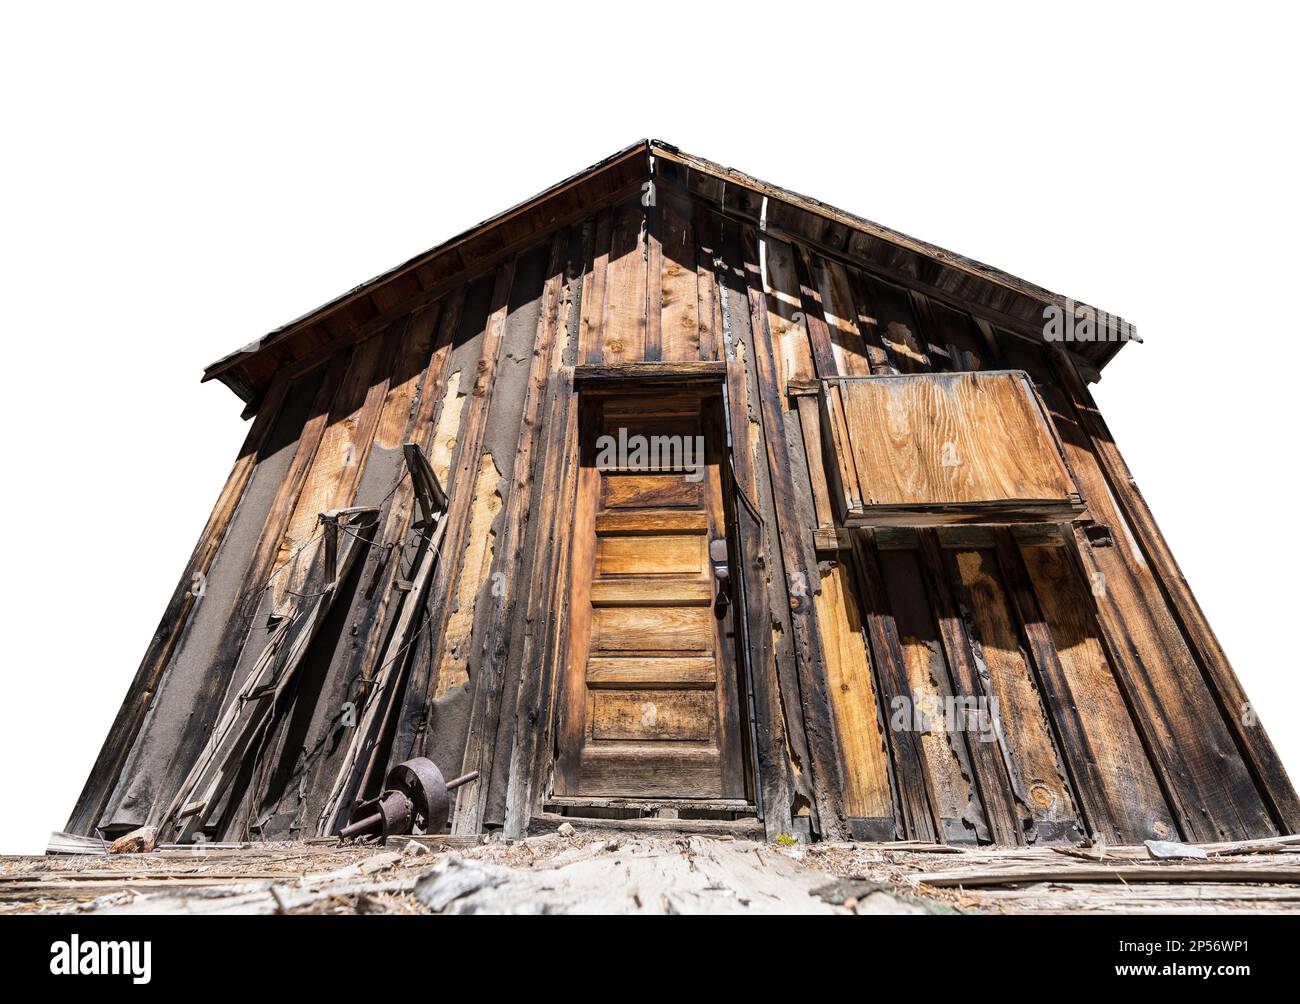 Vue sur la cabine d'exploitation minière abandonnée sur les terres de la forêt nationale dans les montagnes de la Sierra Nevada de Californie. Isolé sur blanc. Banque D'Images